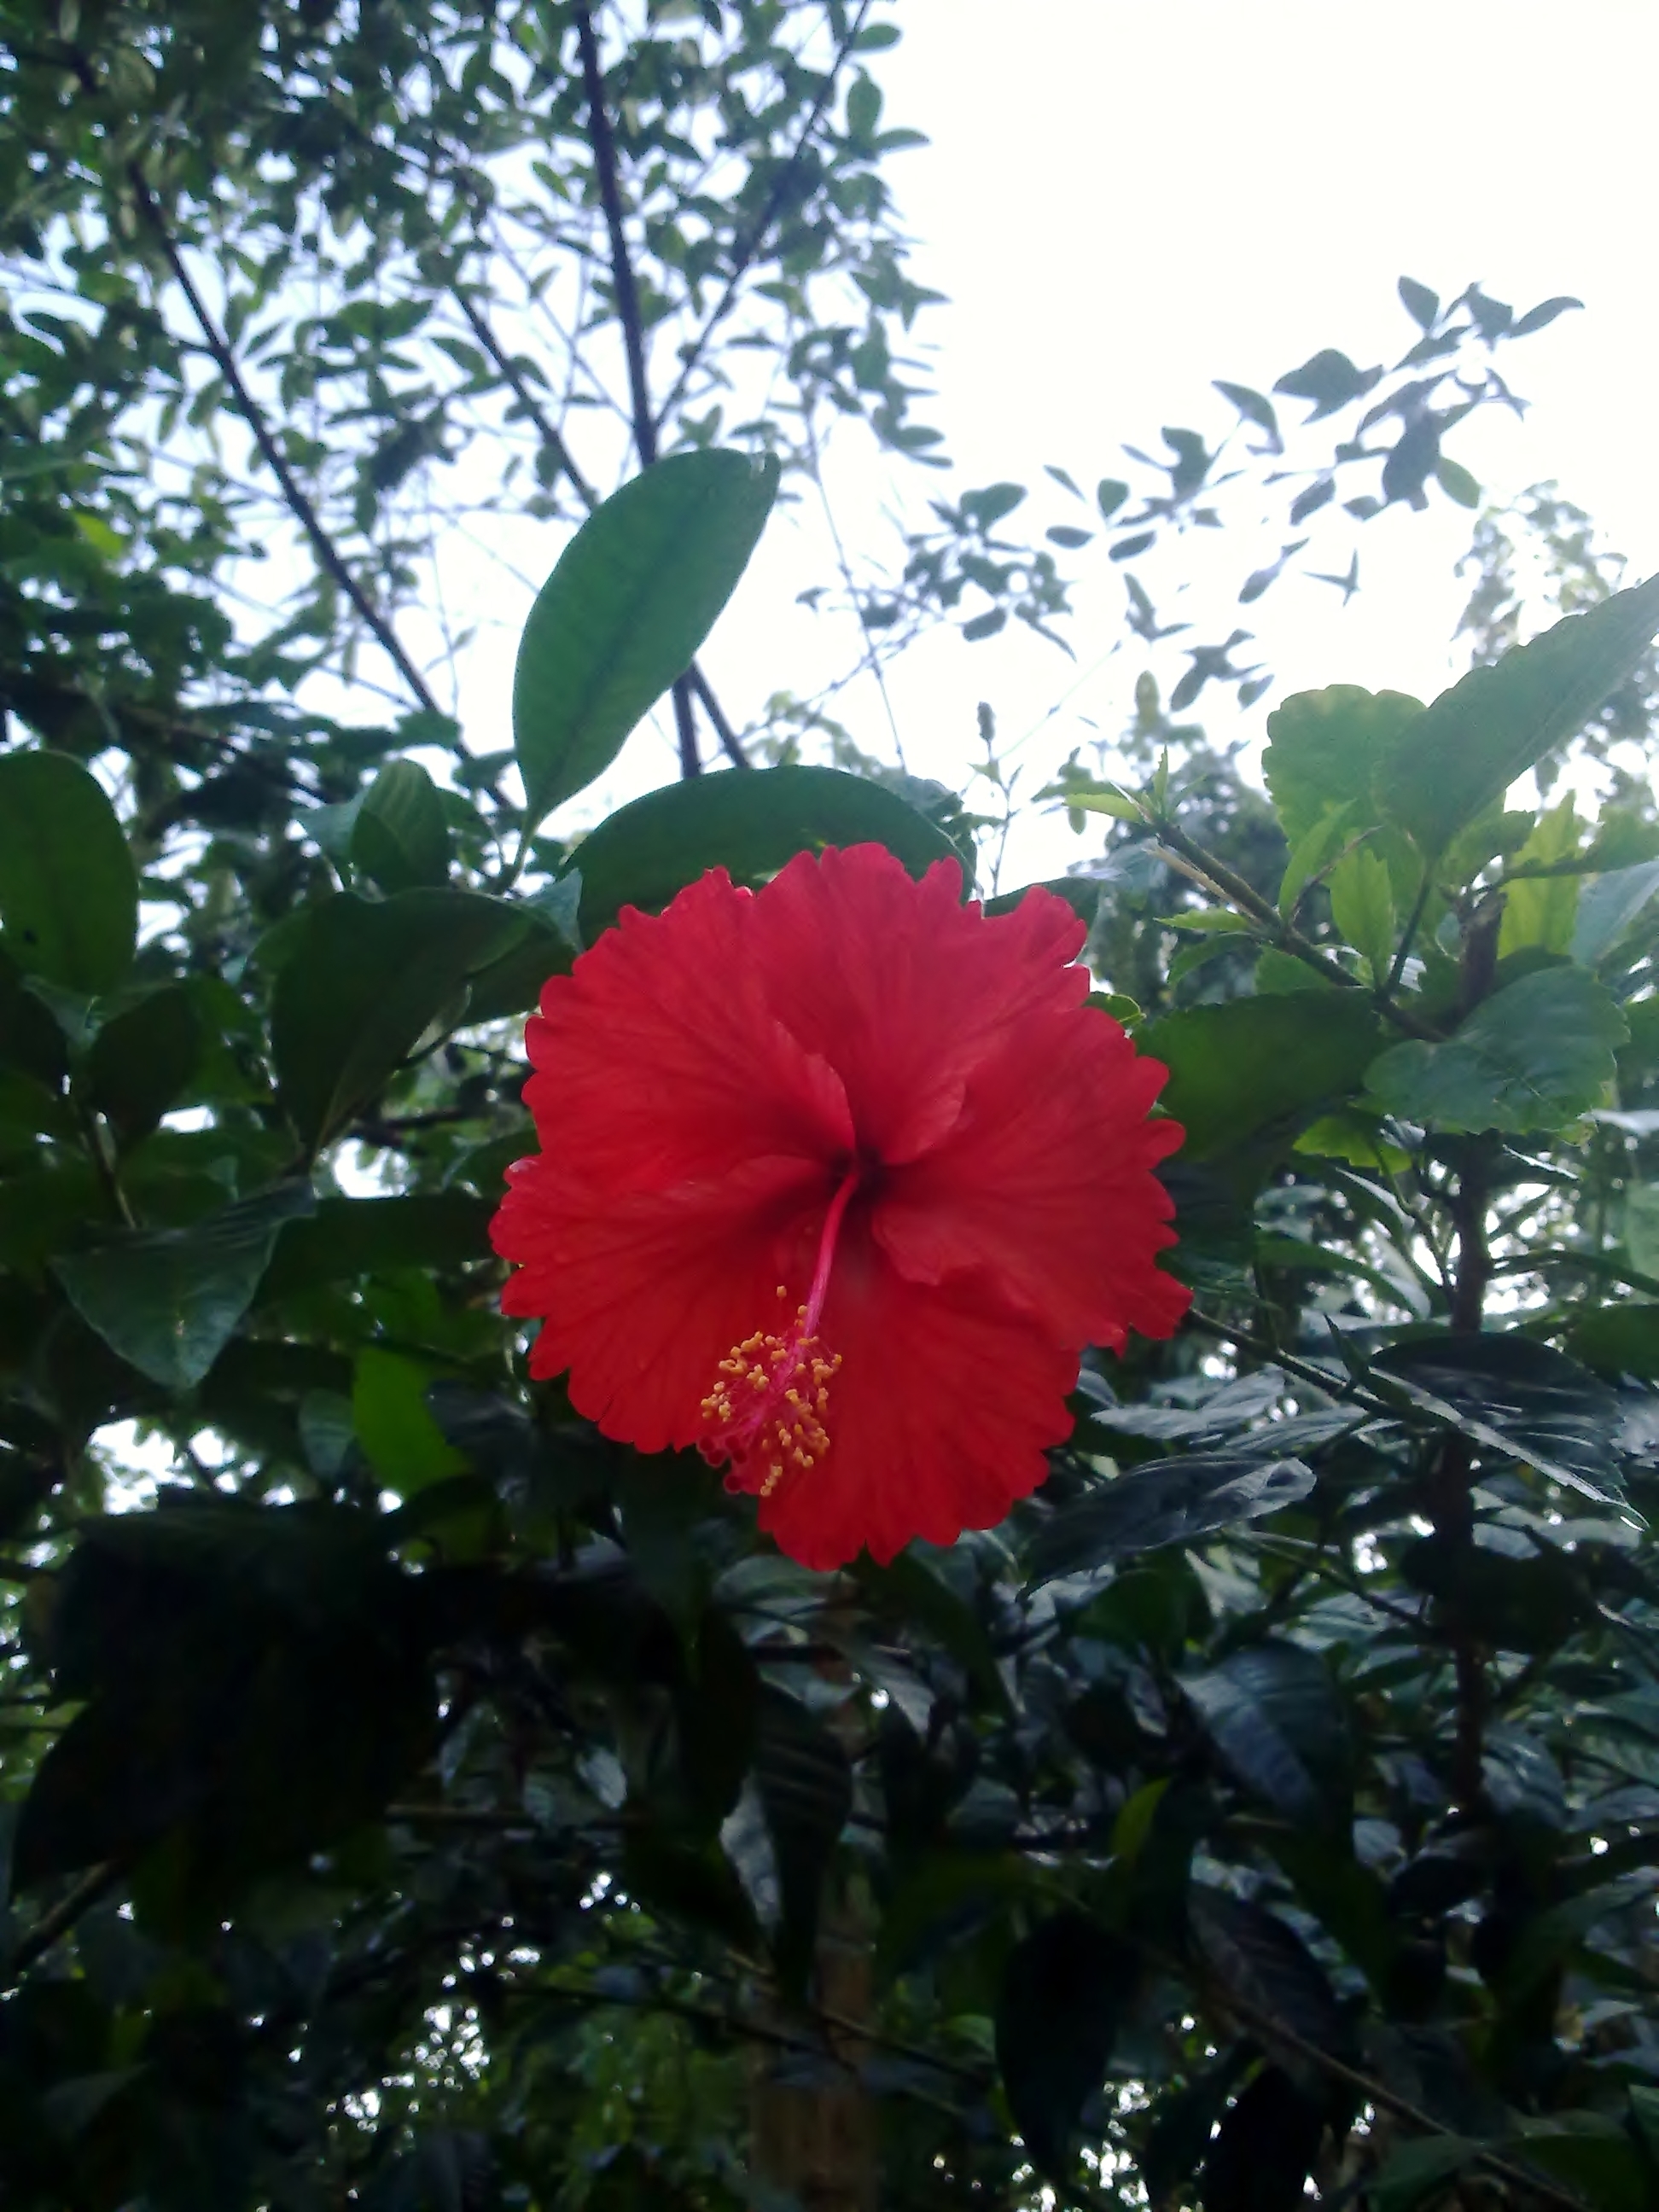 Chembarathi flower (hibiscus)-1 photo